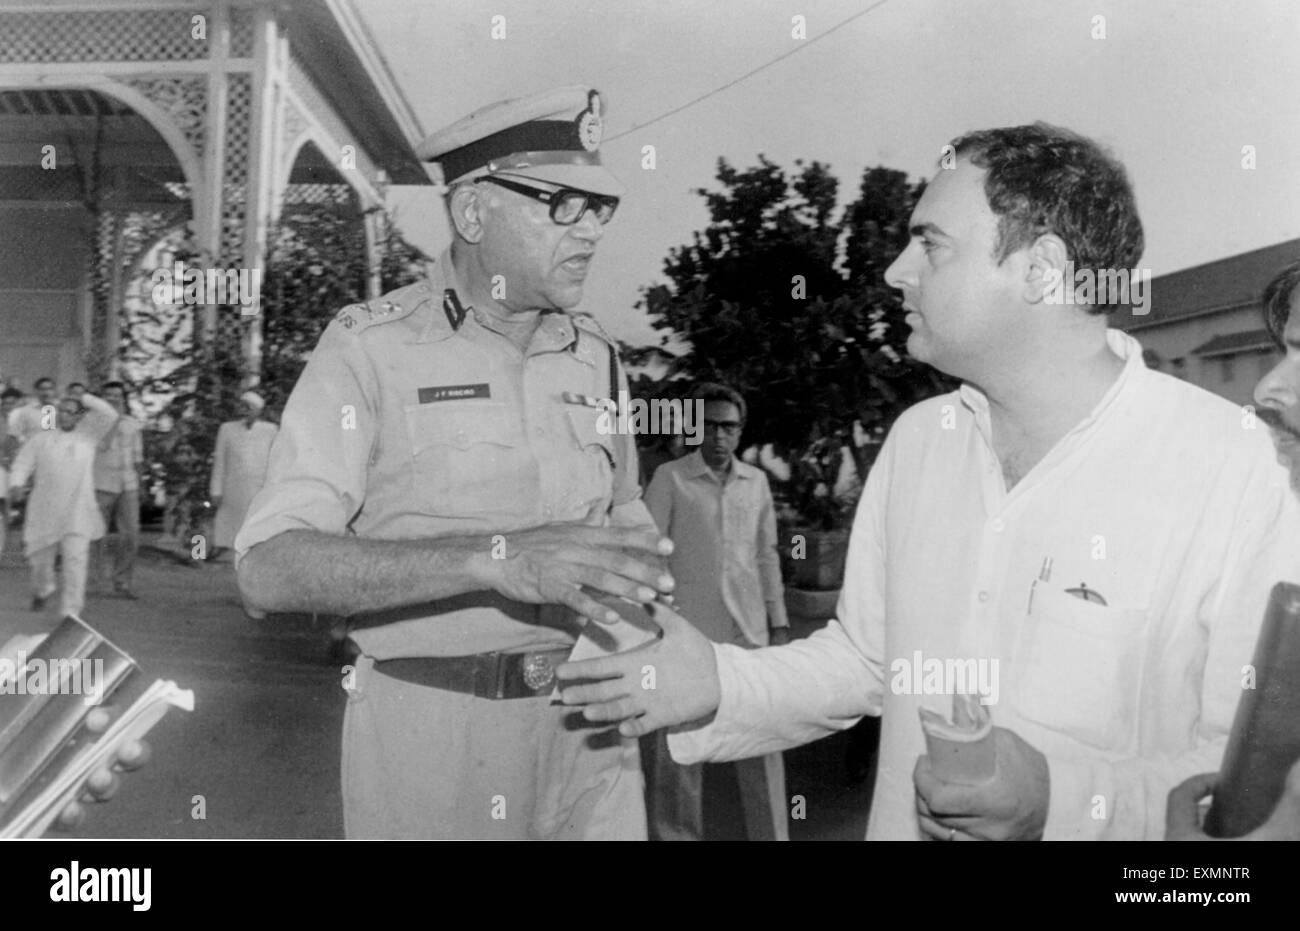 Homme politique indien Parti du Congrès national indien l'ancien Premier ministre Rajiv Gandhi se serrer la main avec Julio Francis Ribeiro officier de police indien à Raj Bhawan Raj Bhavan Bombay Mumbai Inde Asie Banque D'Images